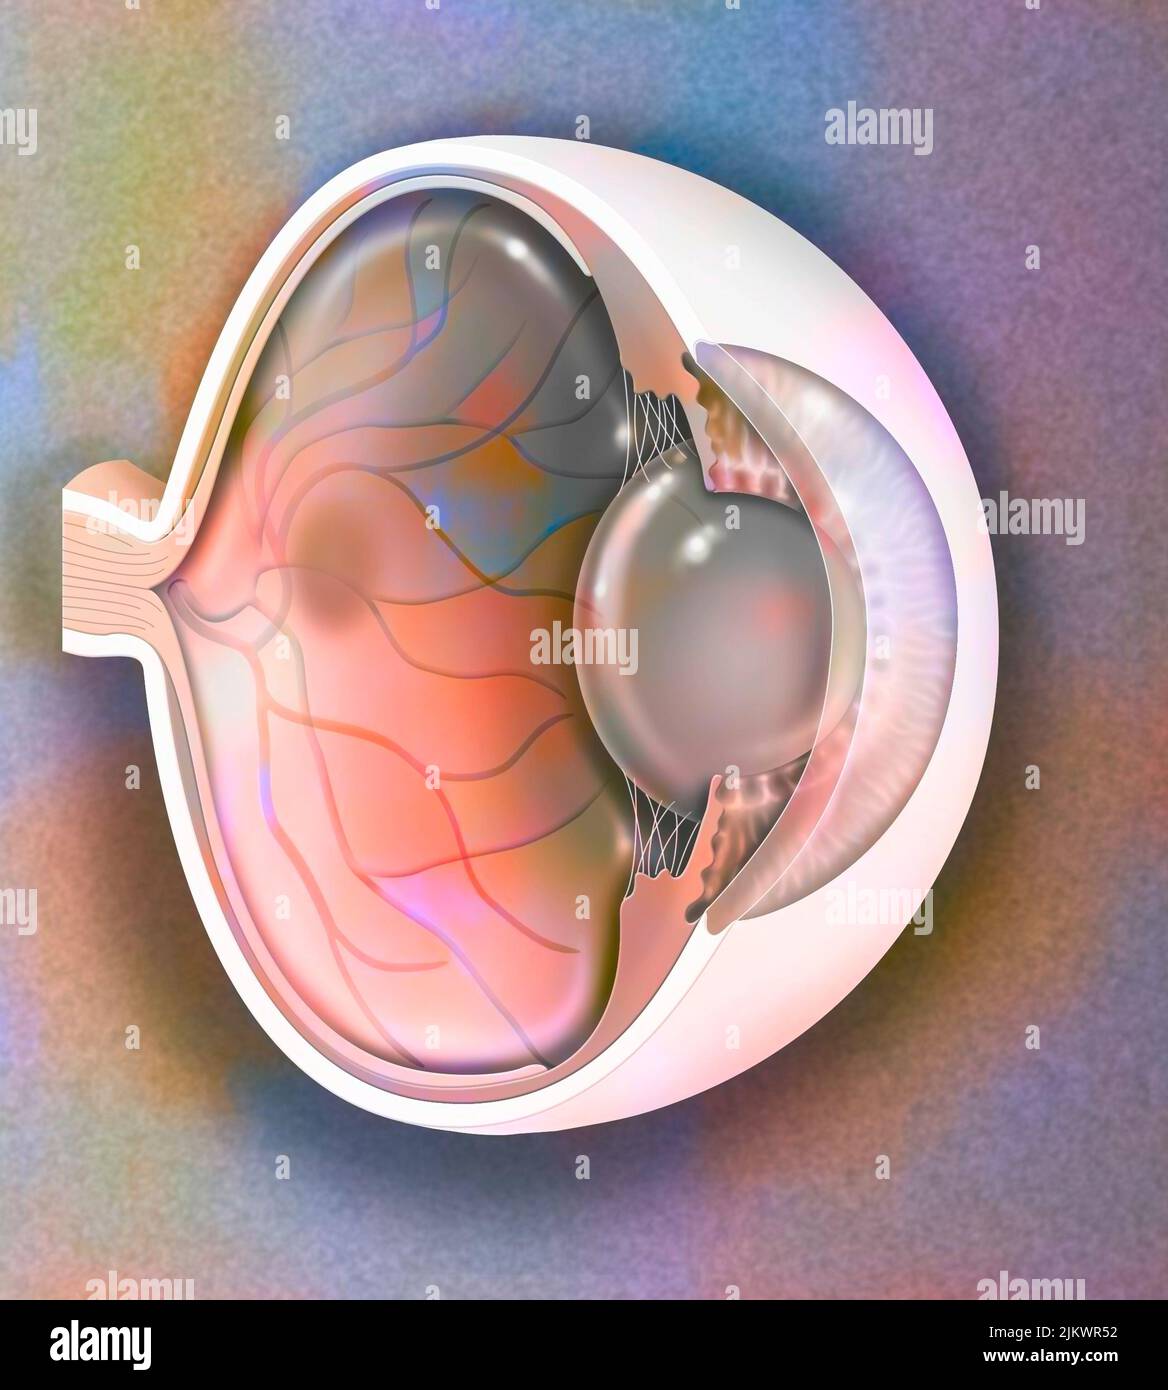 Vista sagittale dell'anatomia dell'occhio che mostra lente, retina, cornea, iride, coroide. Foto Stock